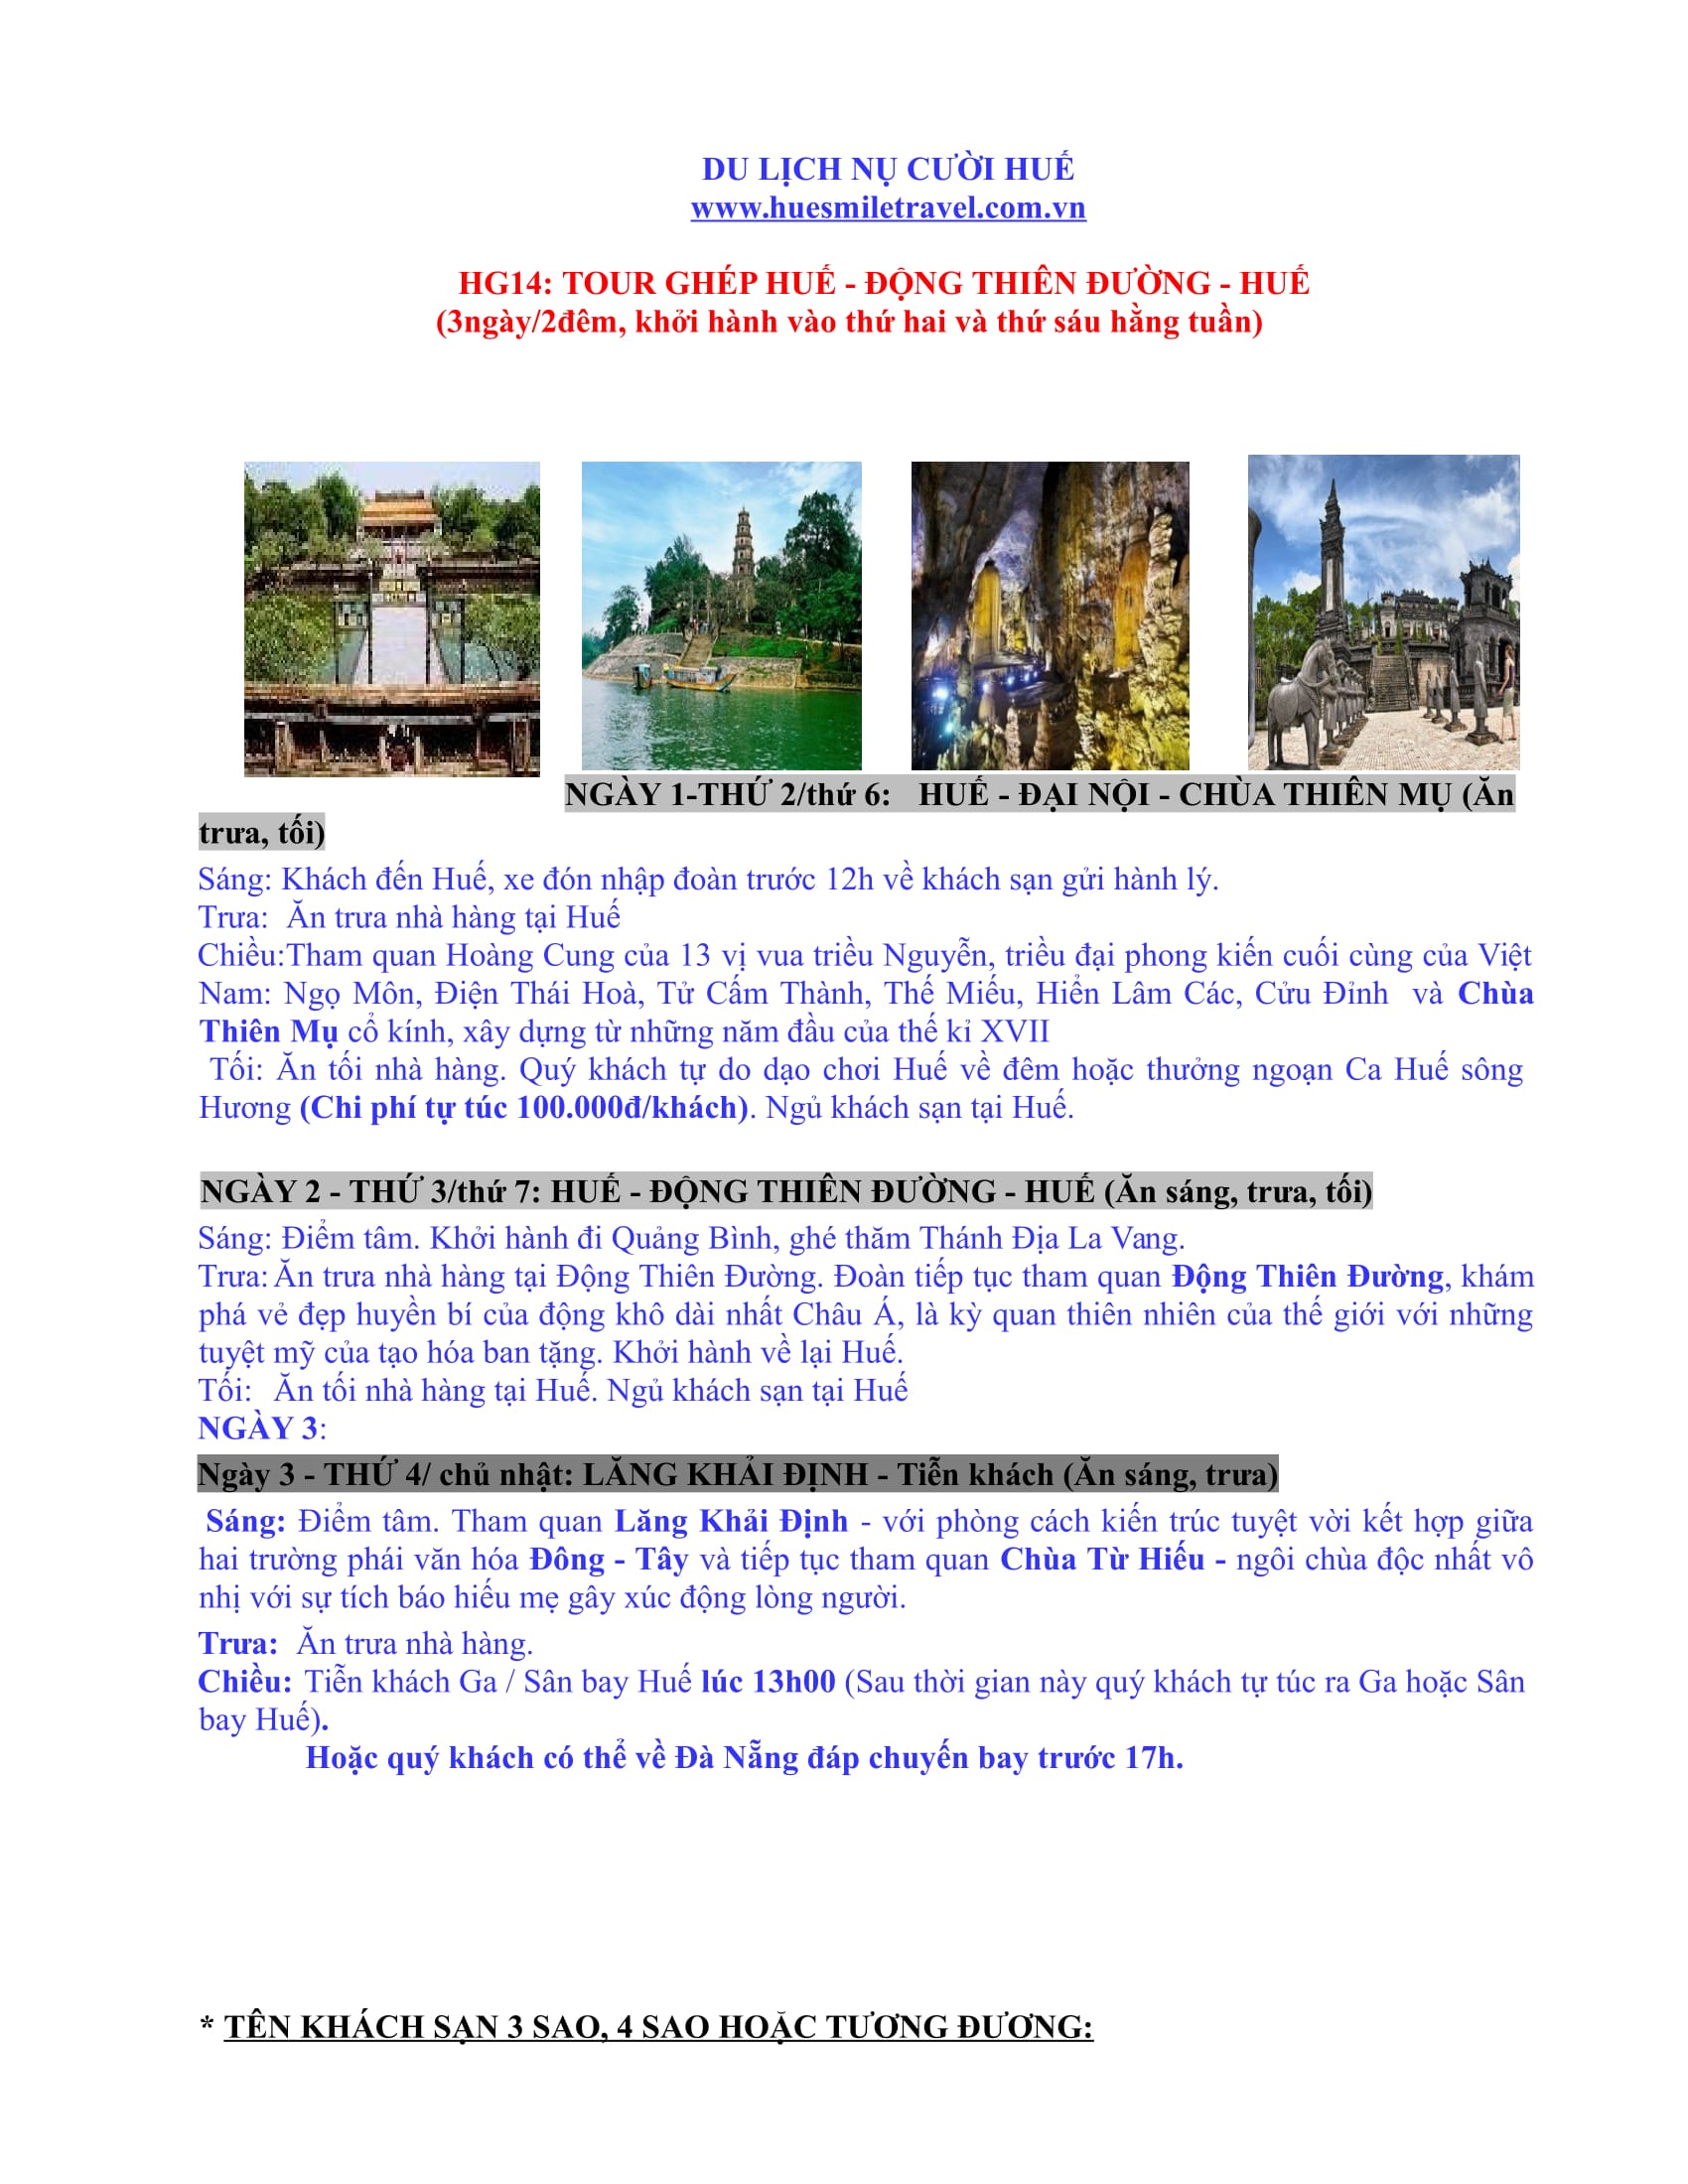 Tour ghép Huế - Động Thiên Đường - Huế